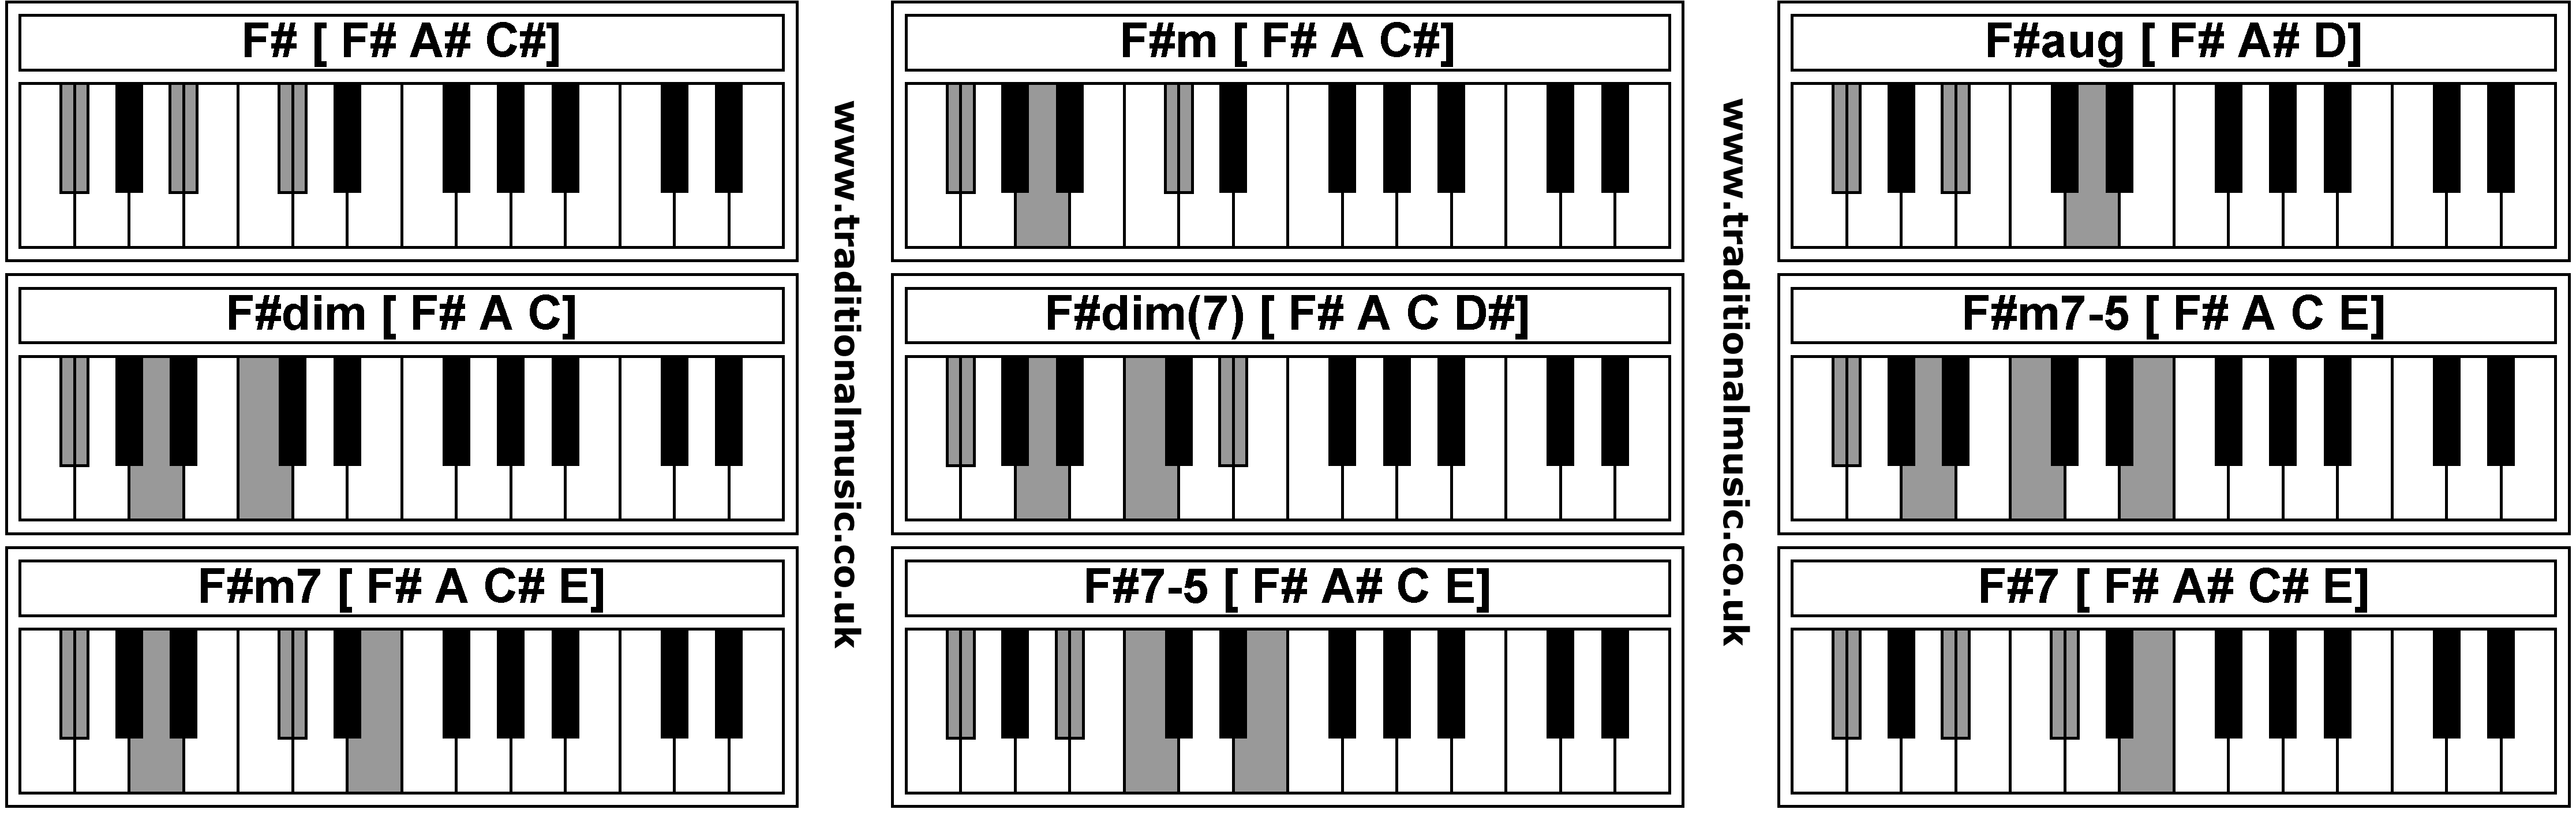 Piano Chords - F#  F#m  F#aug  F#dim  F#dim  F#m7-5 F#m7  F#7-5  F#7 